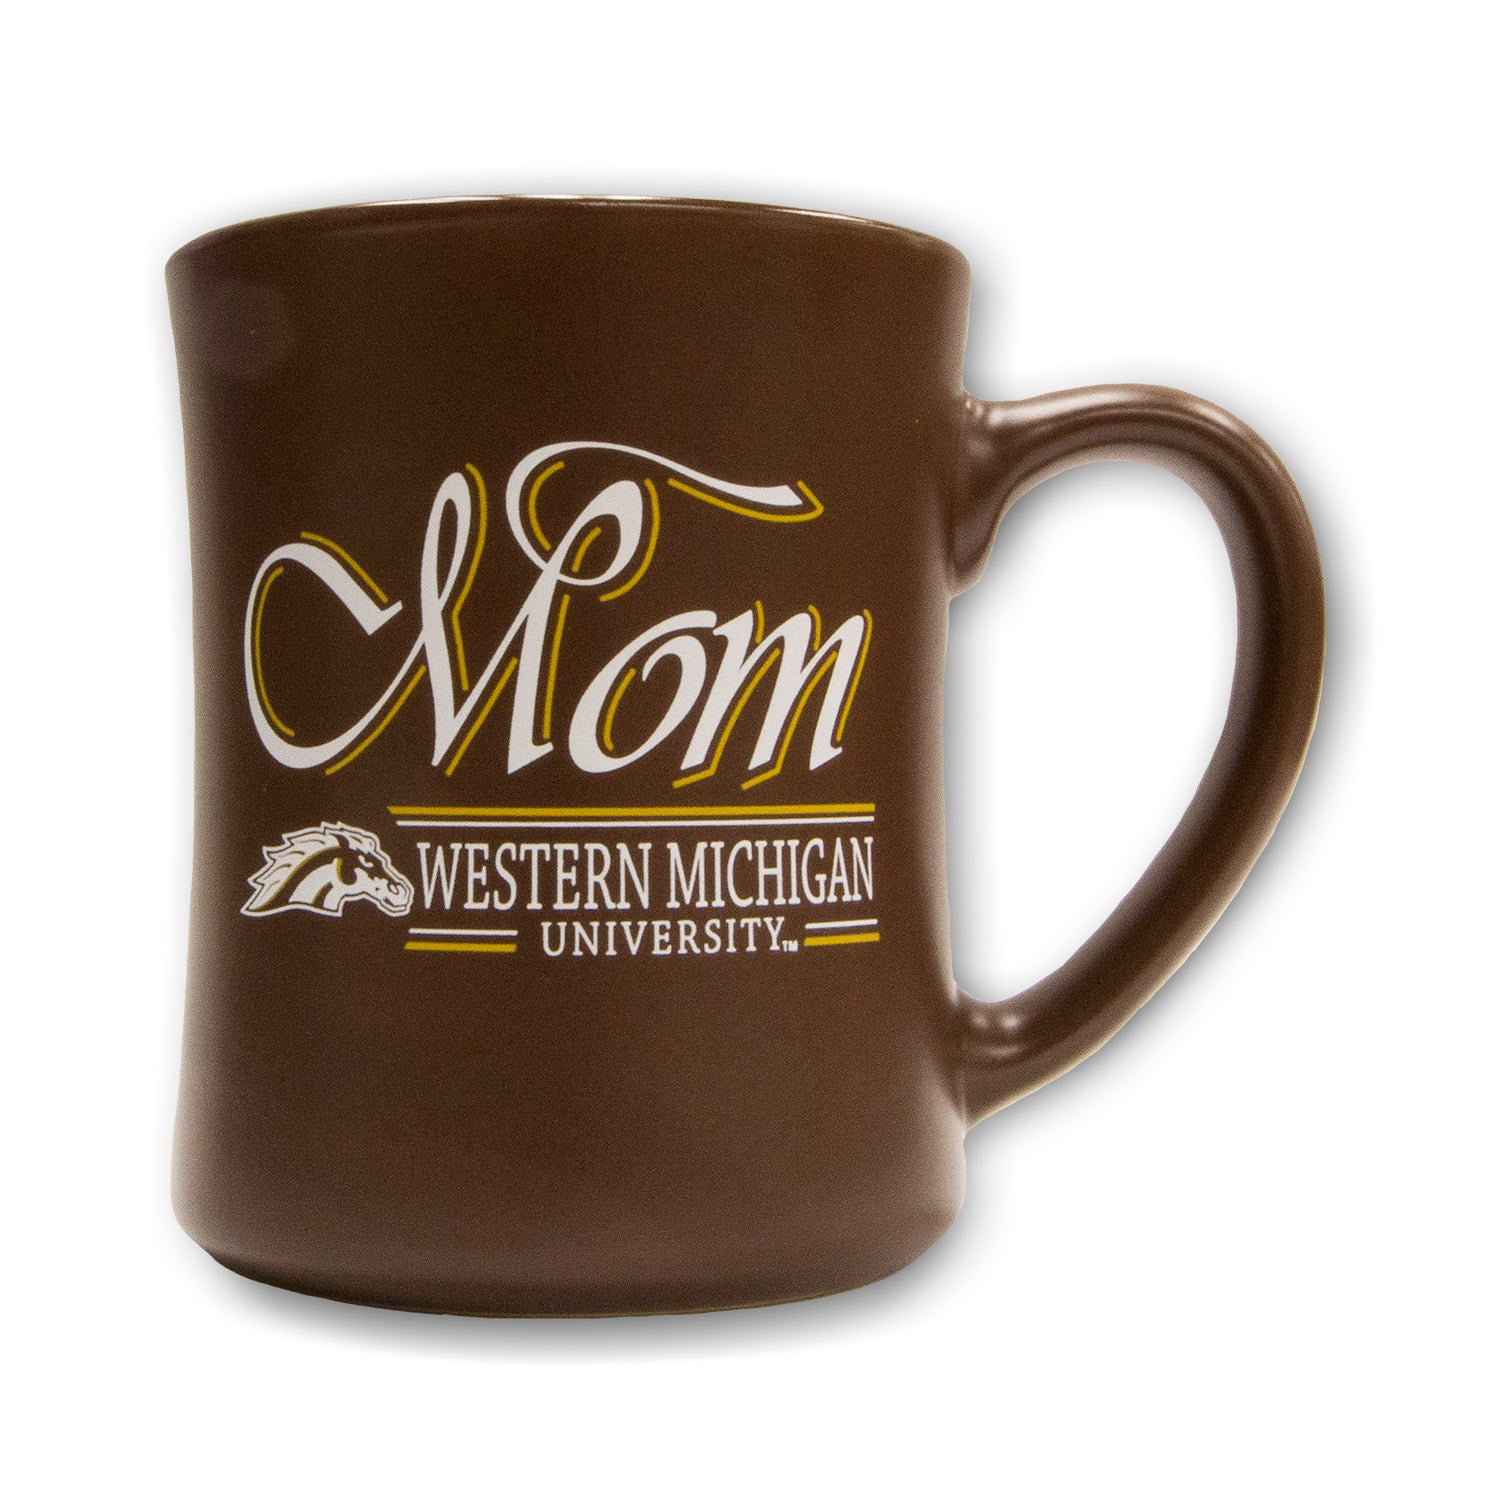 Western Coffee Mug